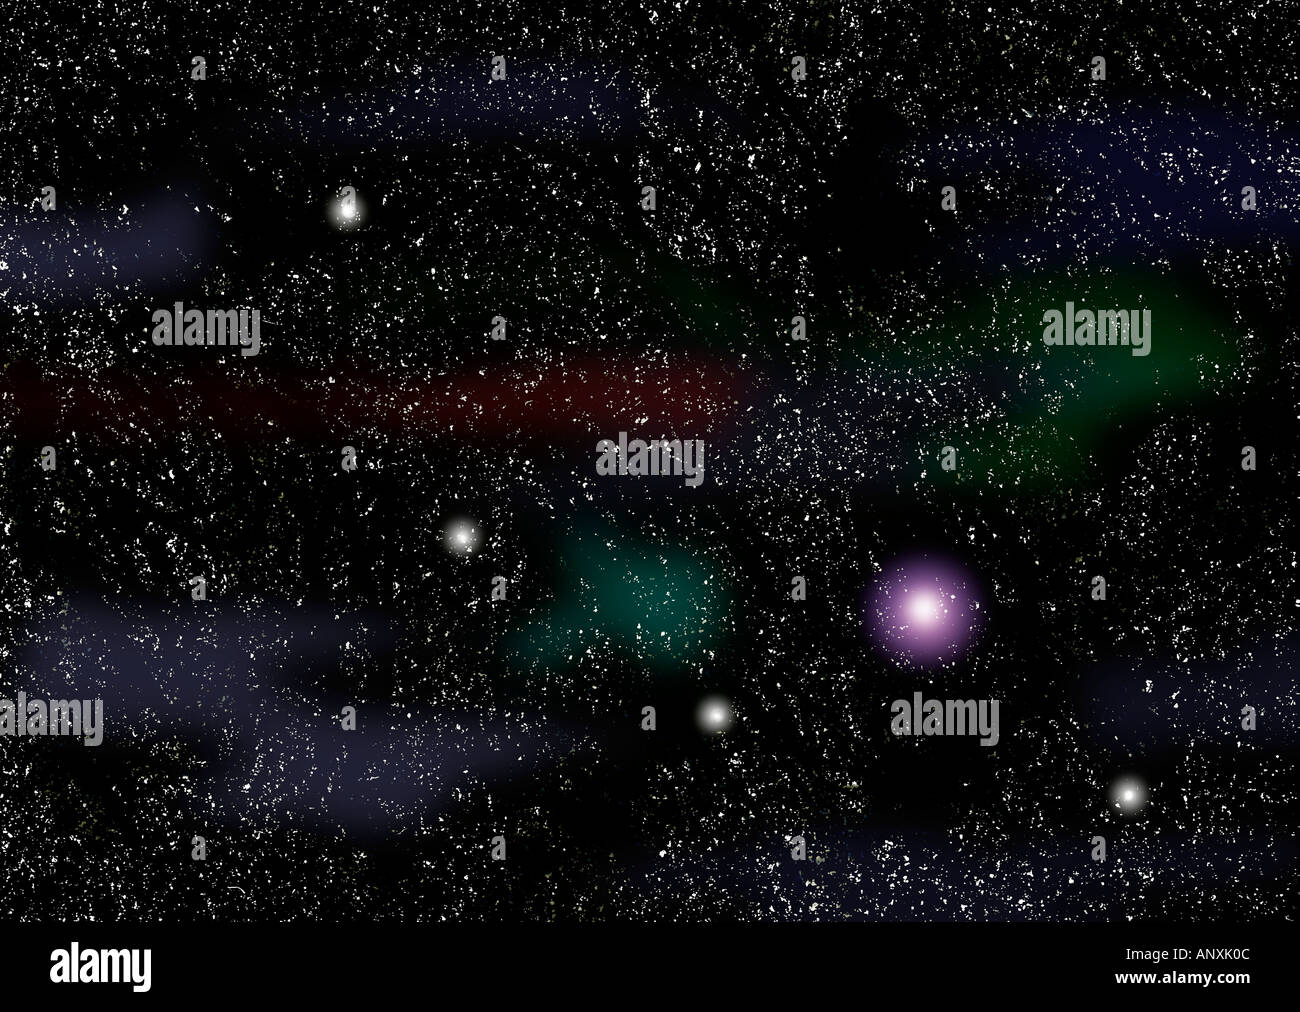 Raum Kosmos Foto Darstellung Planeten Mond und Sterne Illustration Grafik  Planeten Weltraum Kosmos Sterne Sonnen Universum Stockfotografie - Alamy